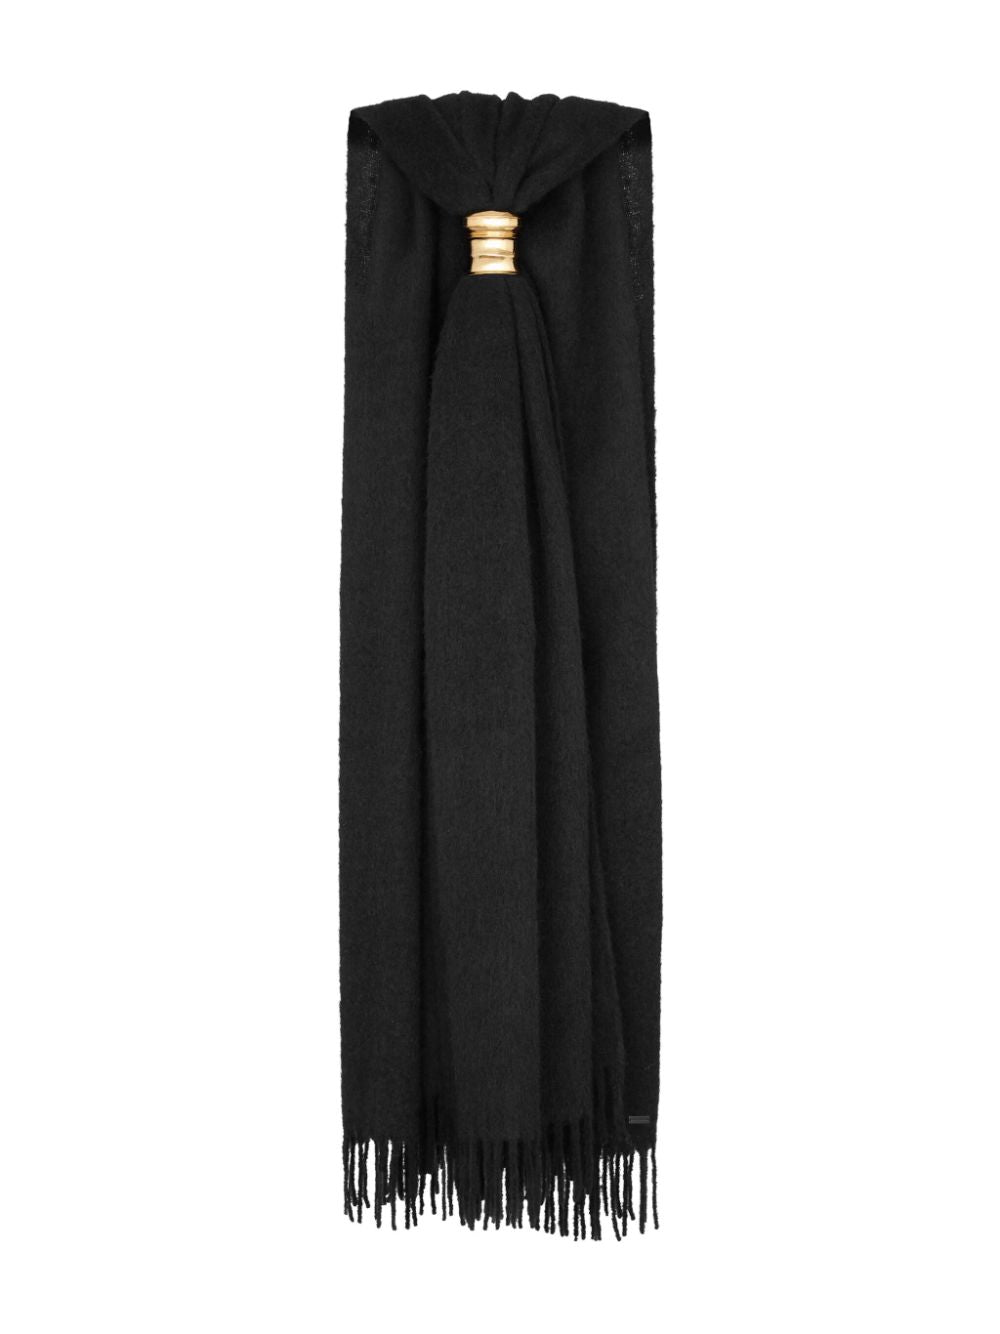 黑色羊毛領巾，金色五金配飾，環繞設計